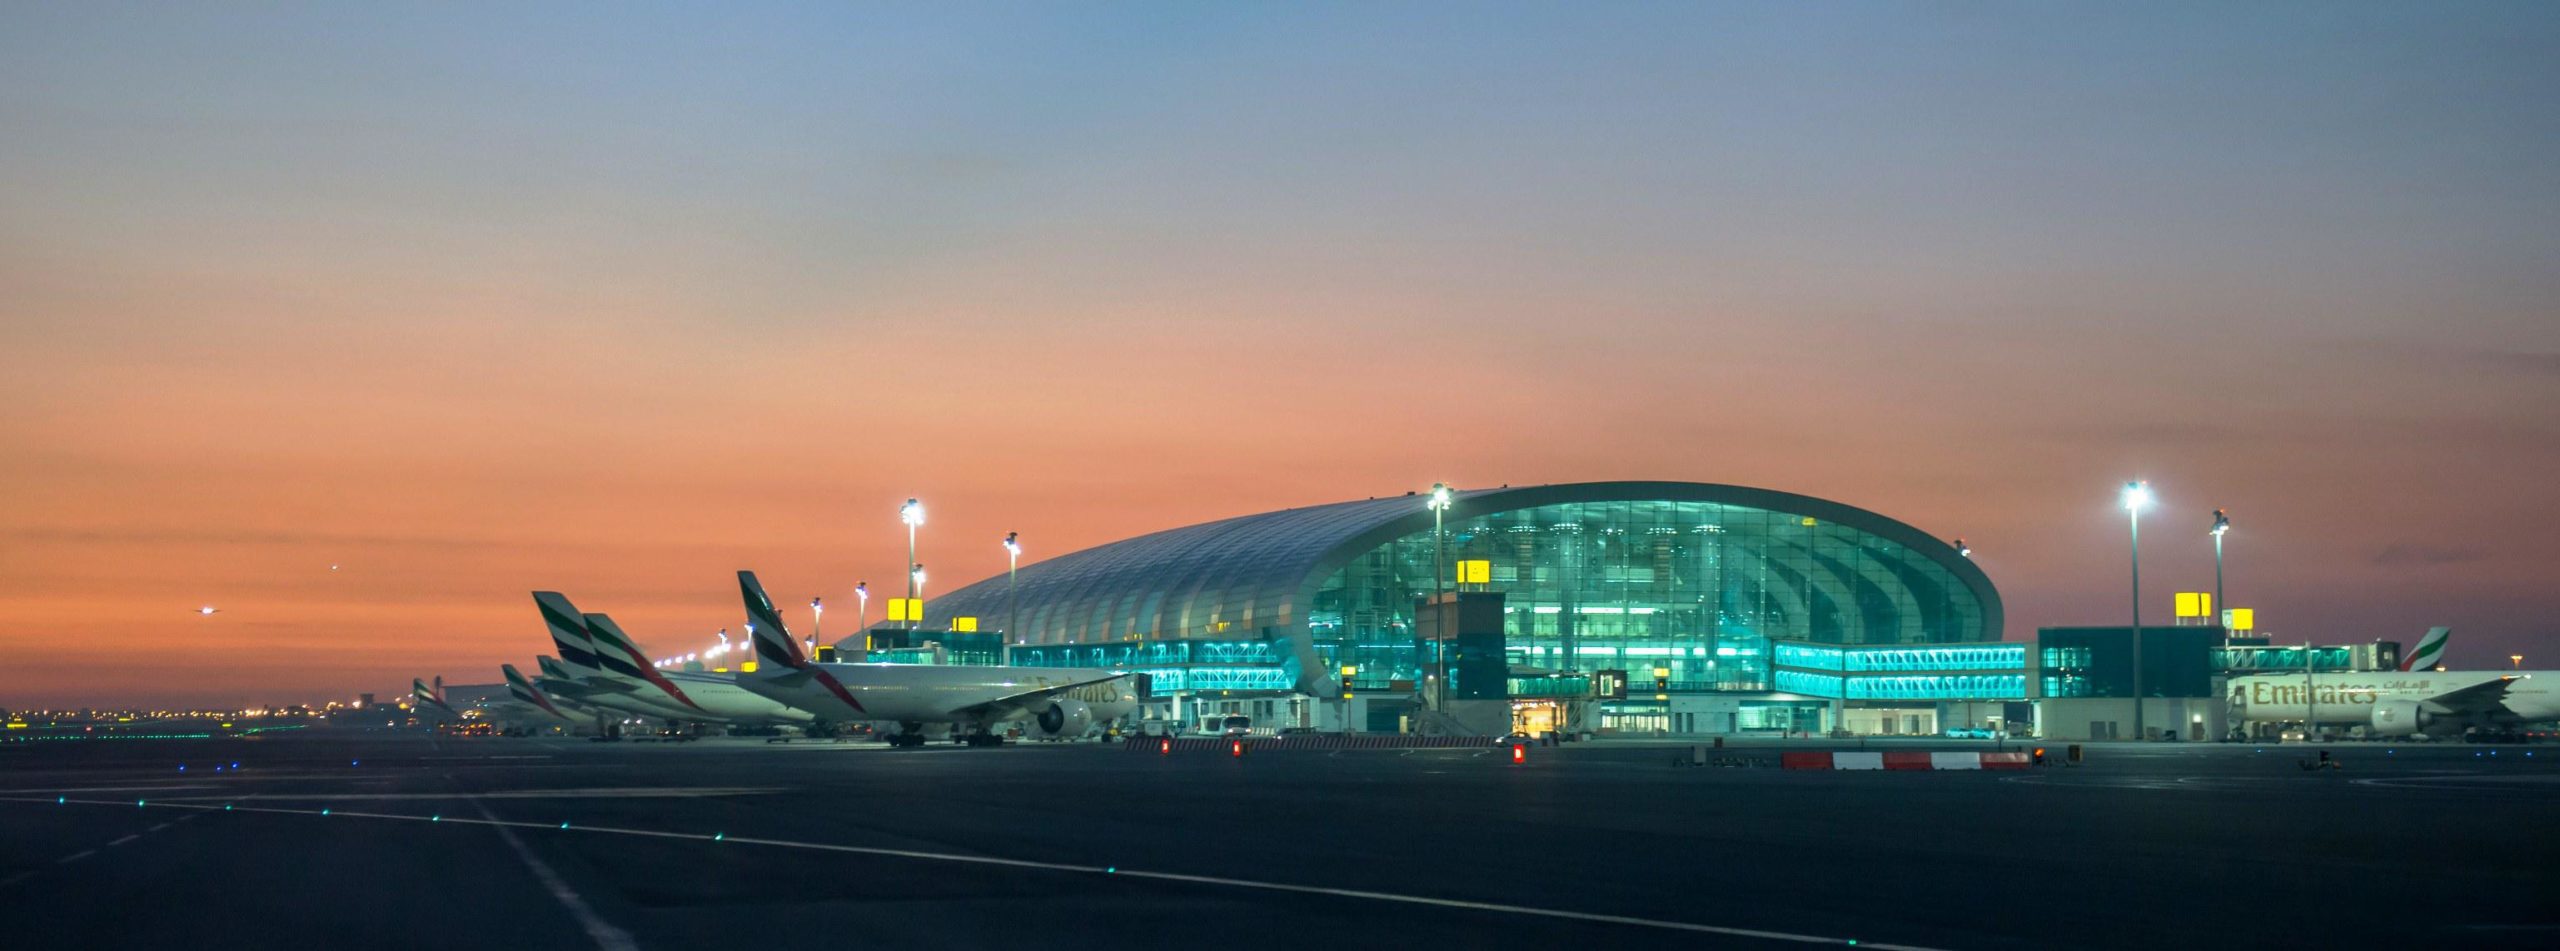 Dubai aeropuerto